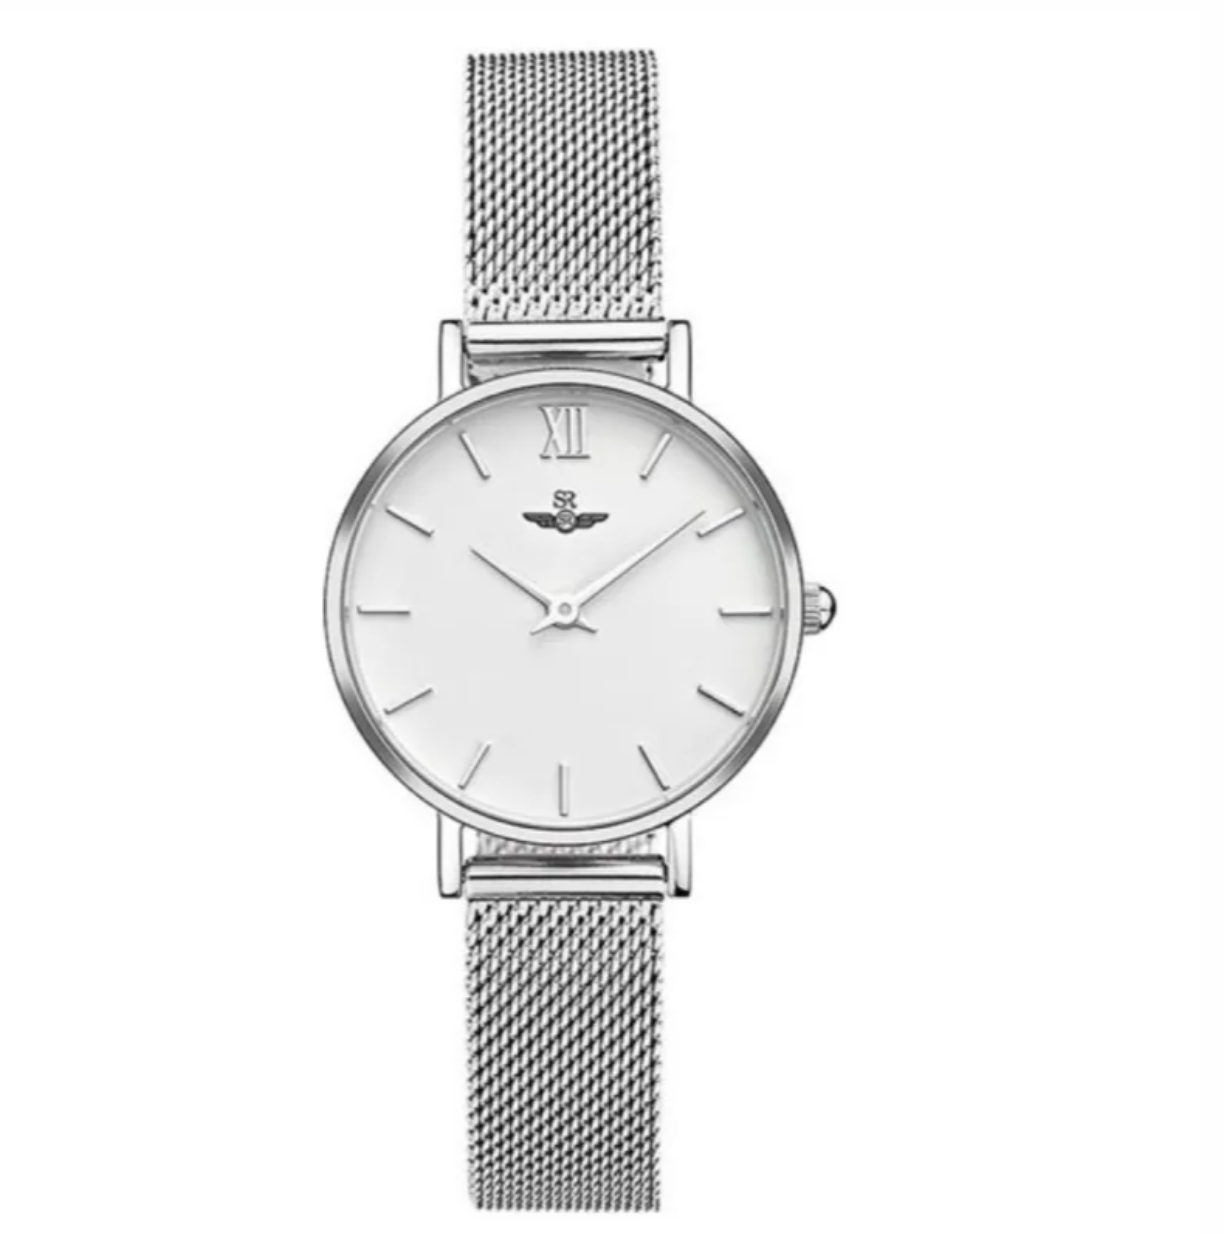  Đồng hồ nữ thời trang SRWatch - dây kim loại màu bạc - mặt đồng hồ 28mm SL1085.1102 